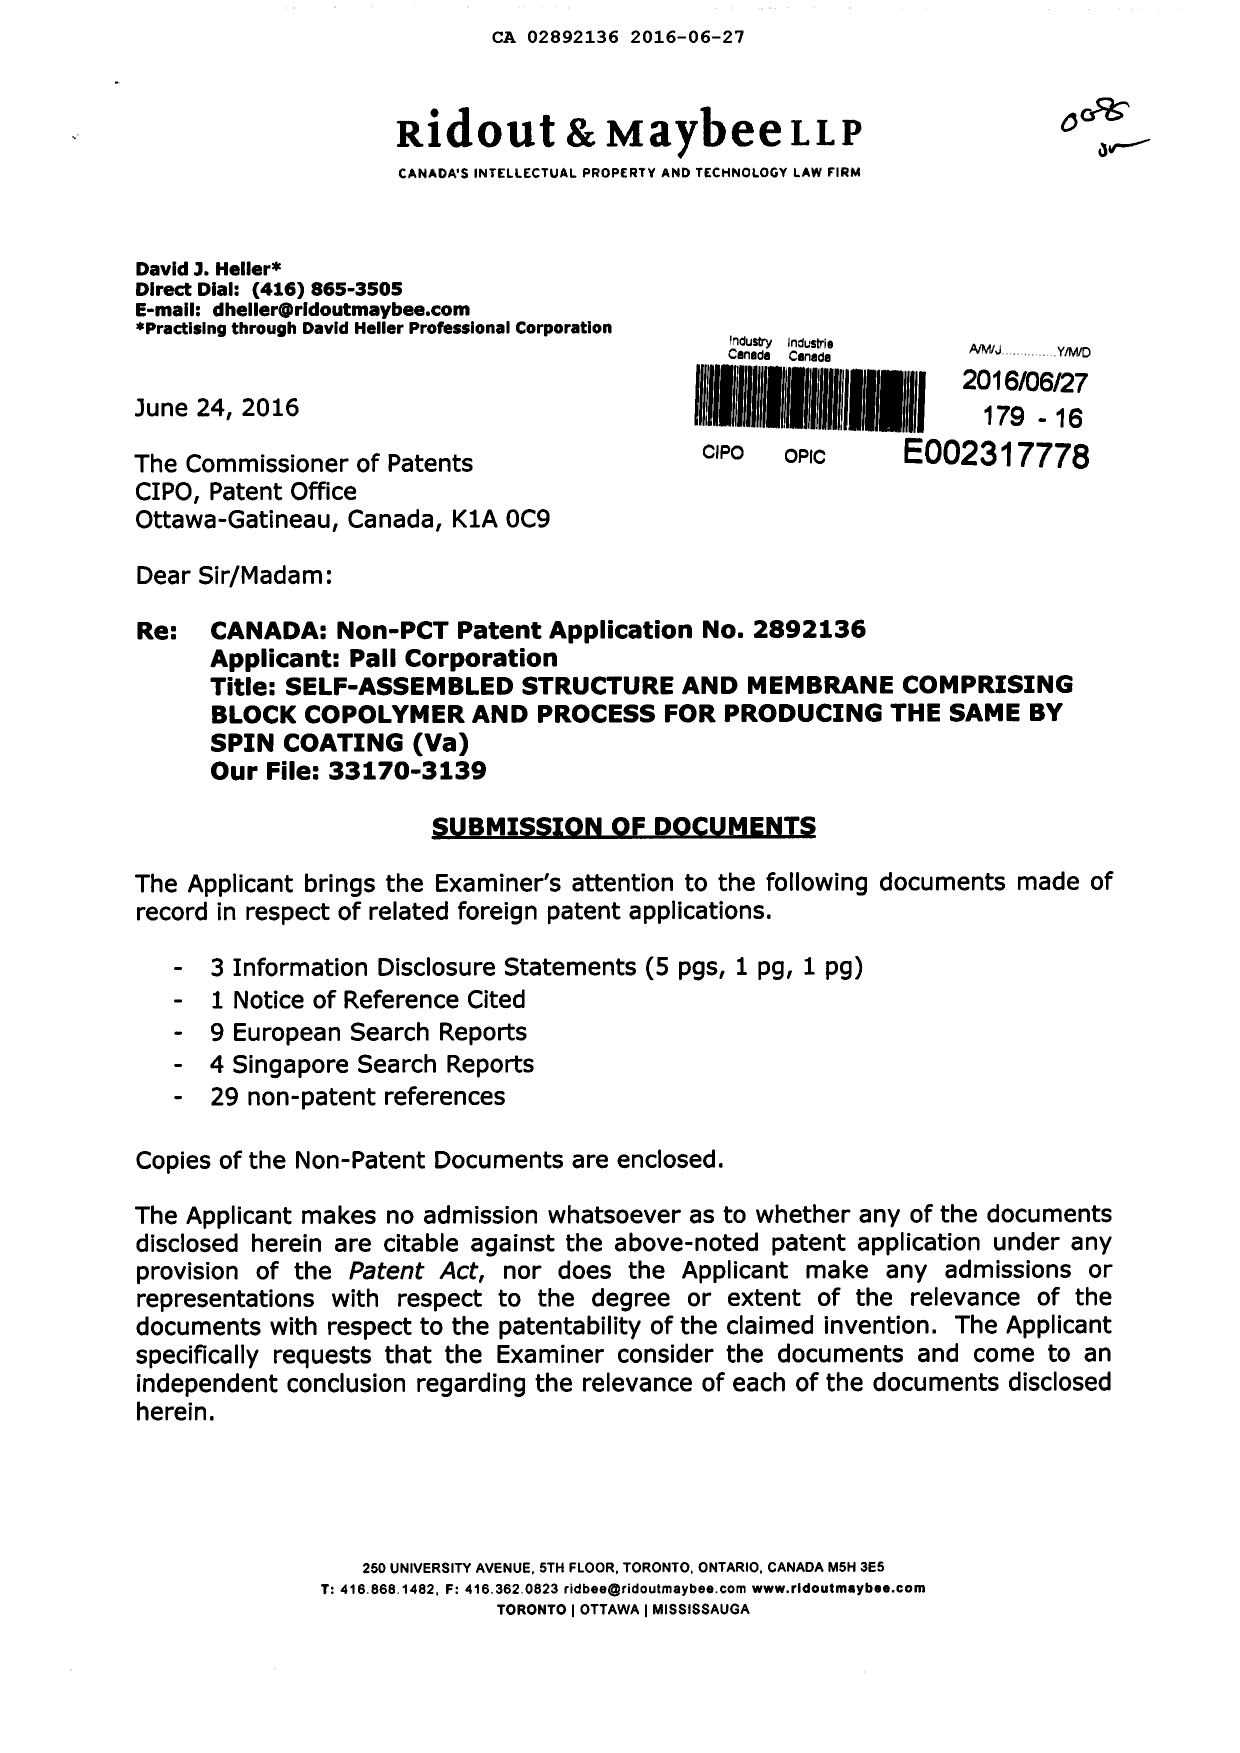 Document de brevet canadien 2892136. Poursuite-Amendment 20151227. Image 1 de 3